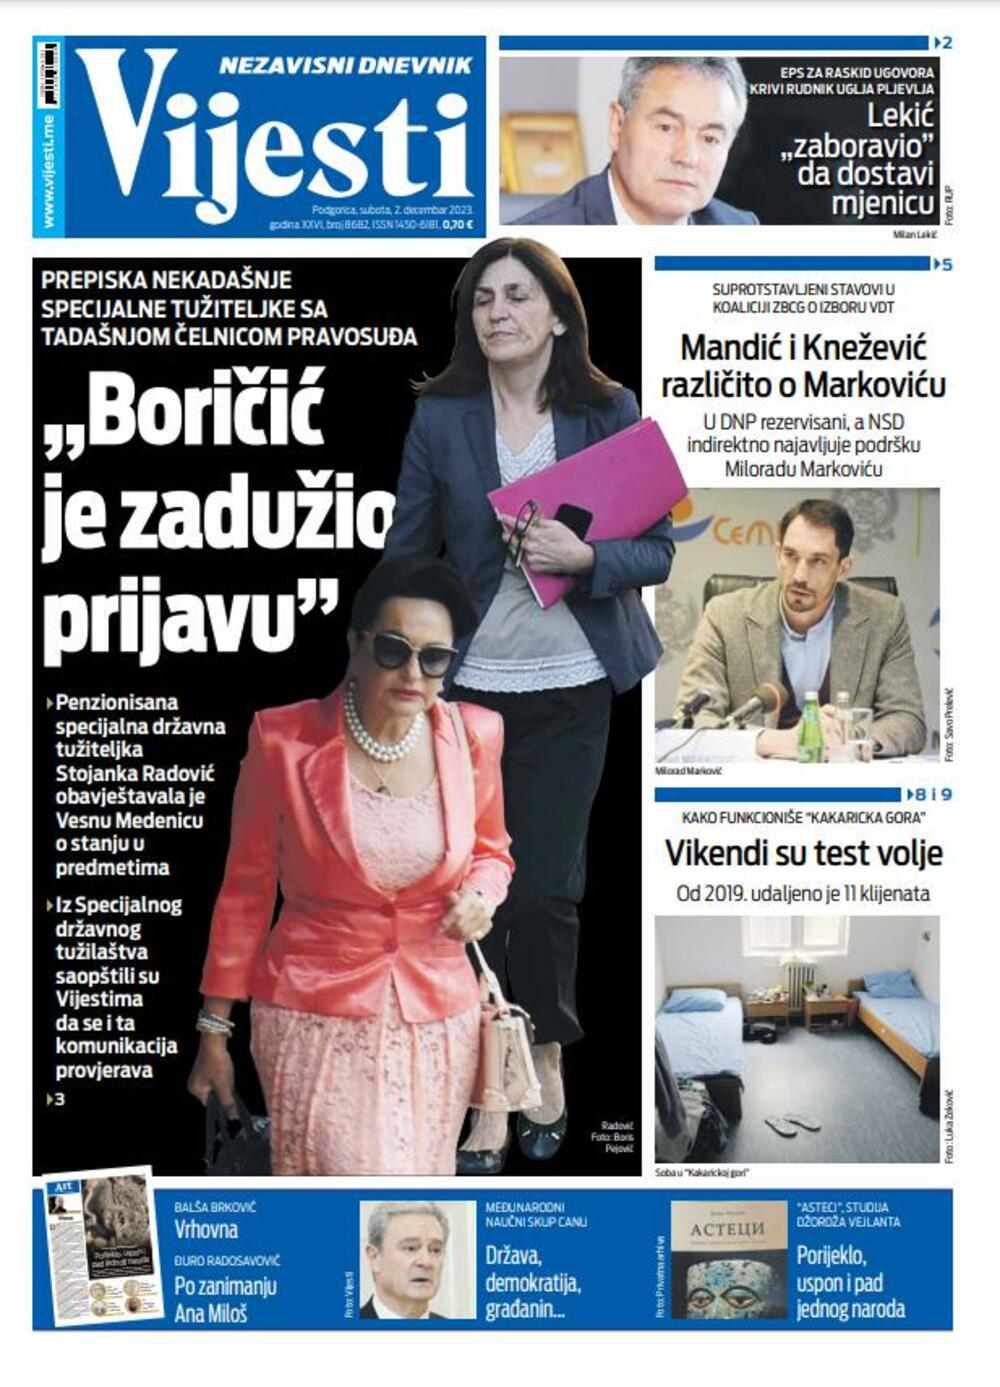 Naslovna strana "Vijesti" za 2. decembar 2023., Foto: Vijesti